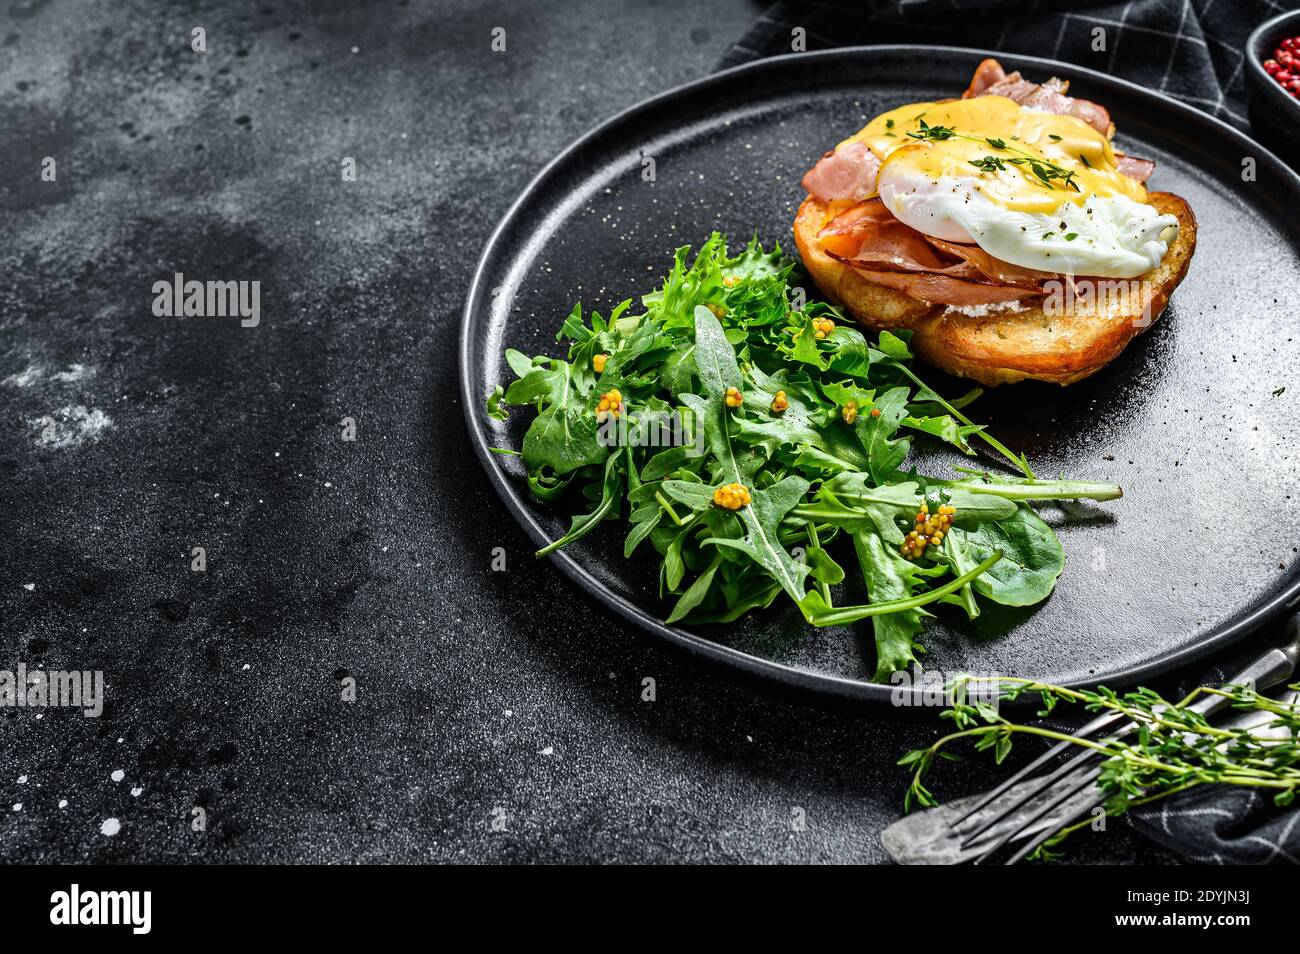 Prima colazione Burger con pancetta, uovo Benedetto, salsa hollandaise su brioche pann. Sfondo nero. Vista dall'alto. Spazio di copia Foto Stock